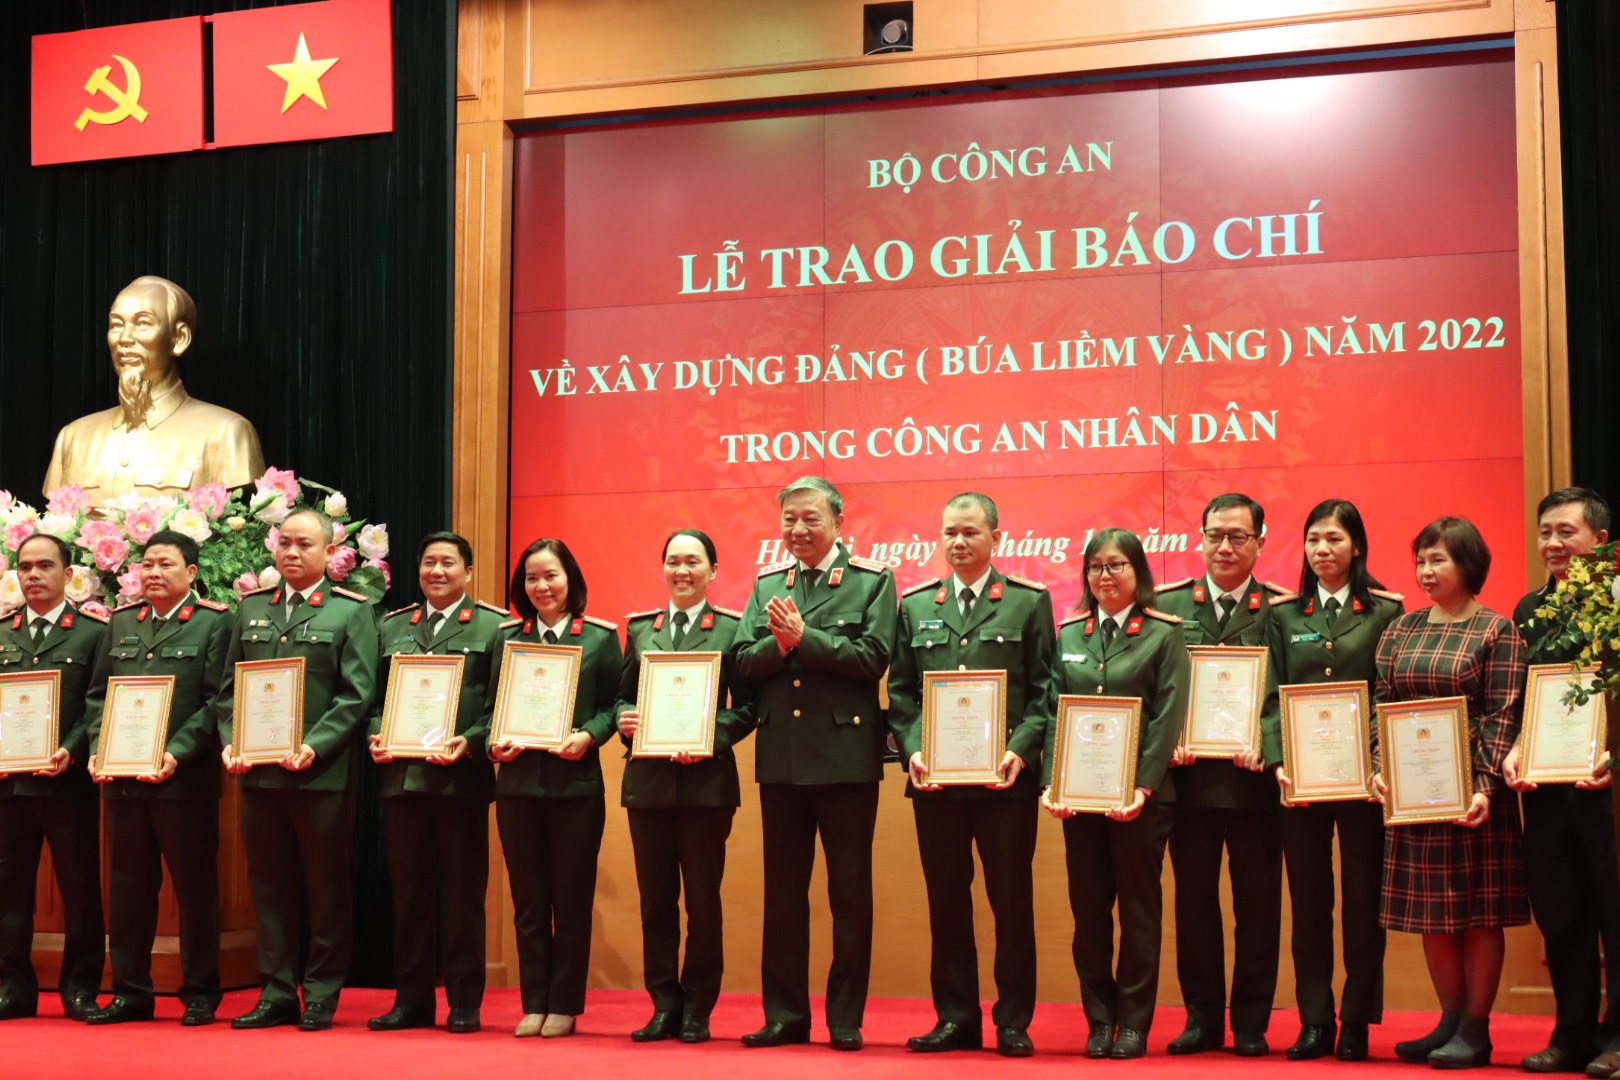 Đồng chí Tô Lâm trao tặng thưởng cho nhóm tác giả đoạt giải A và chụp ảnh cùng nhóm các tác giả đoạt giải.